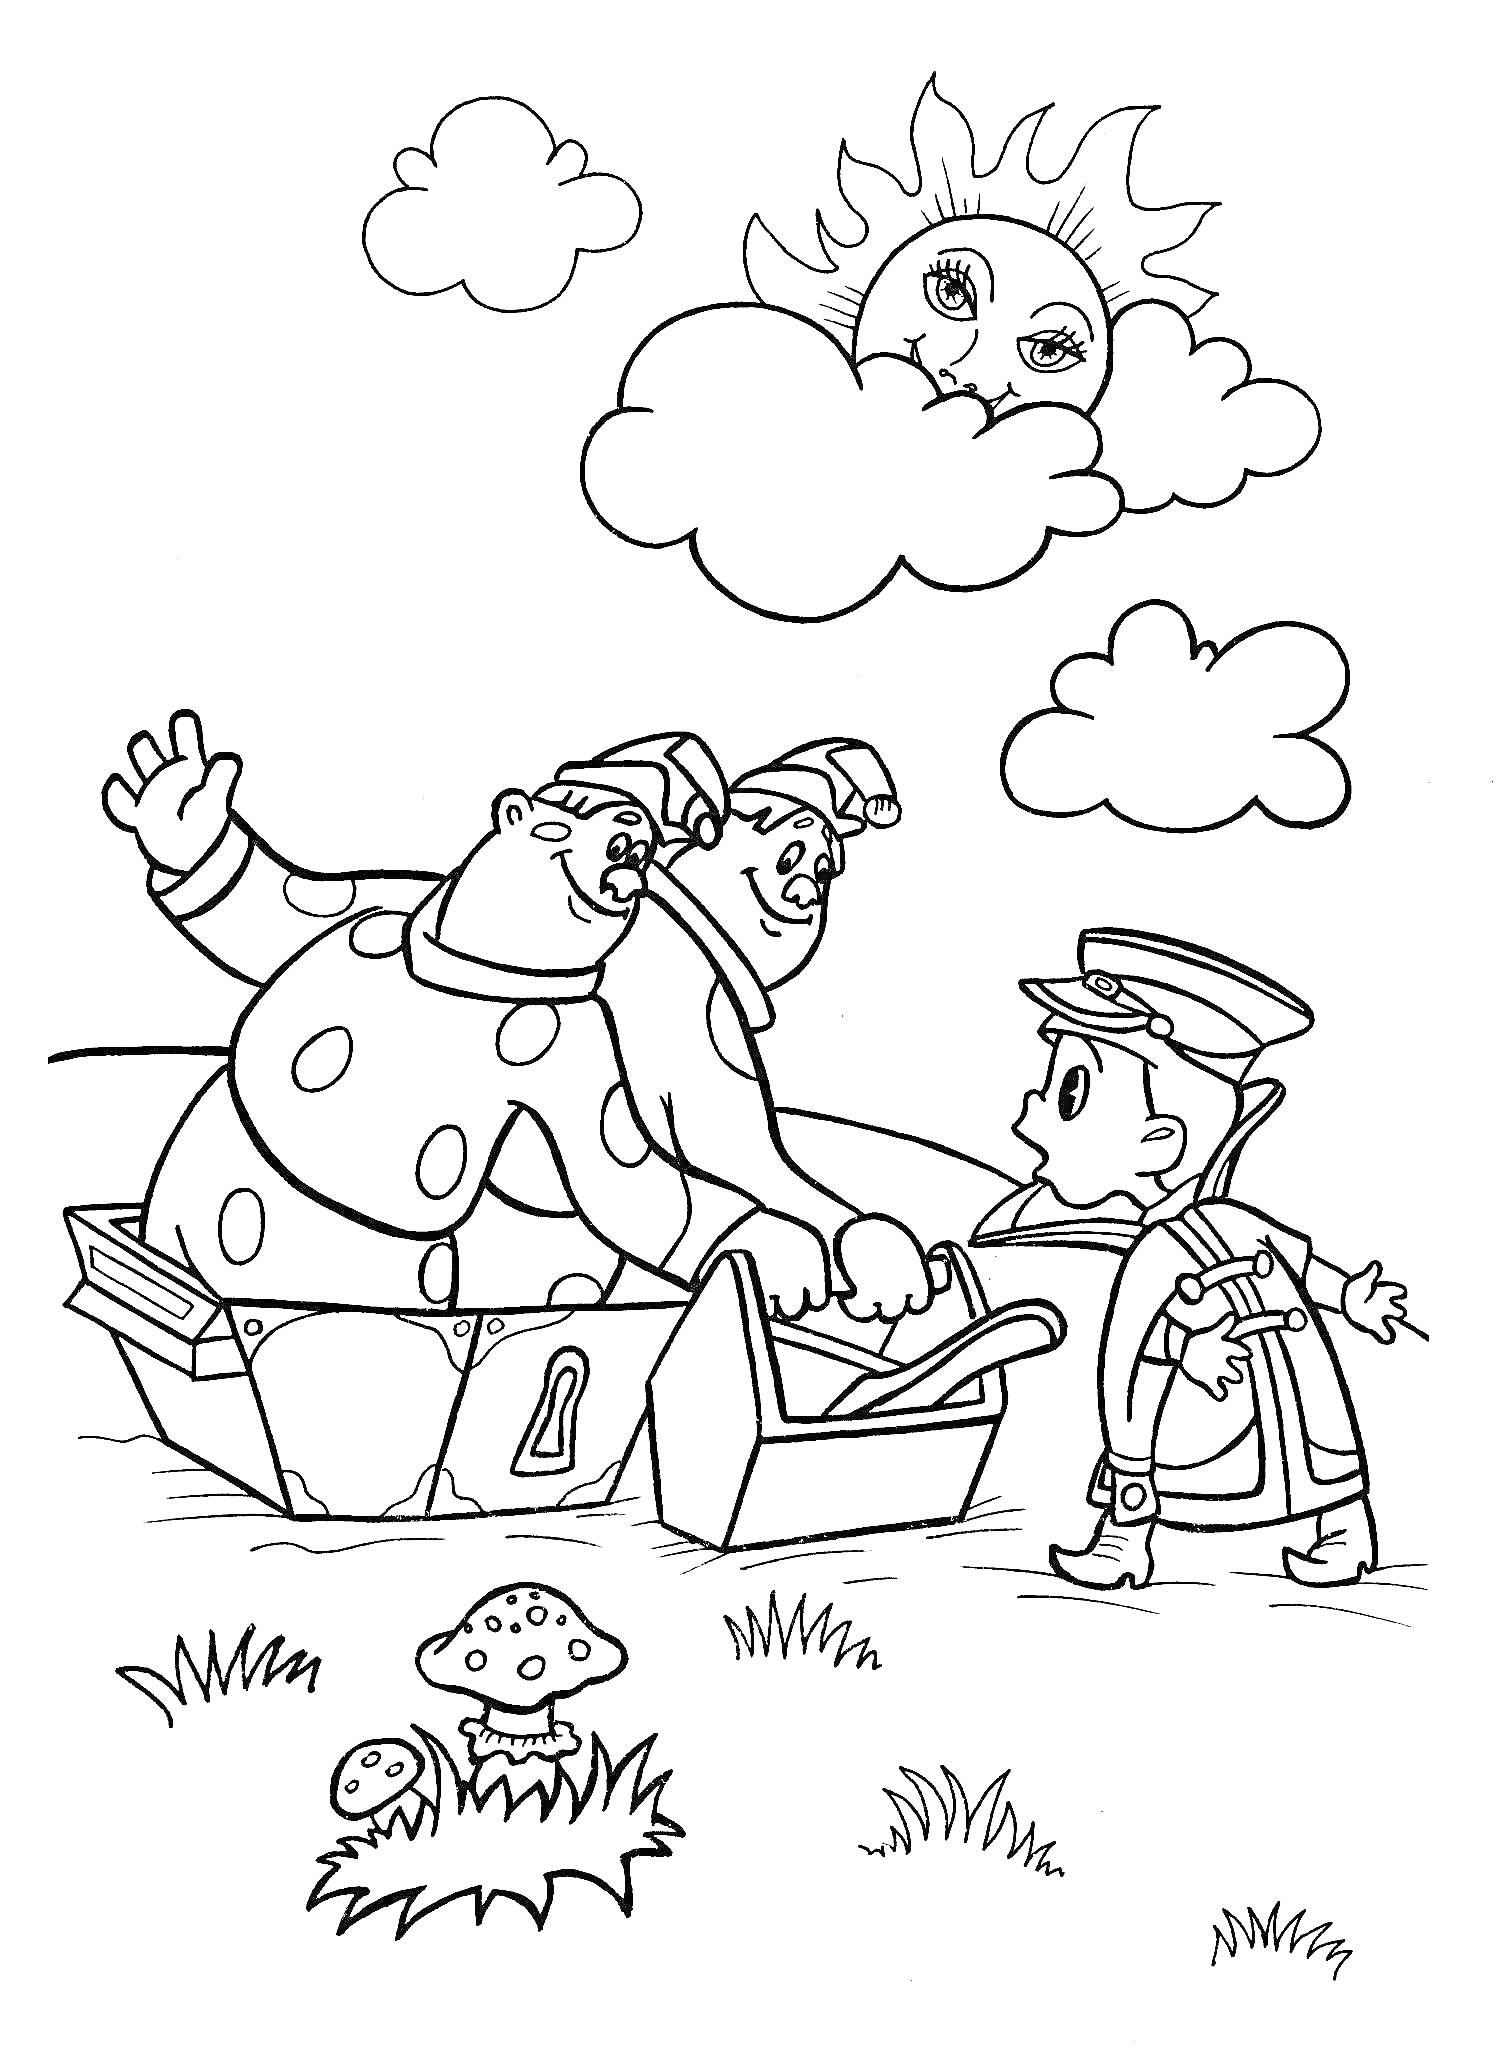 Раскраска Вовка встречается с двумя великанами, на заднем плане улыбающееся солнце и облака, грибок и травка внизу